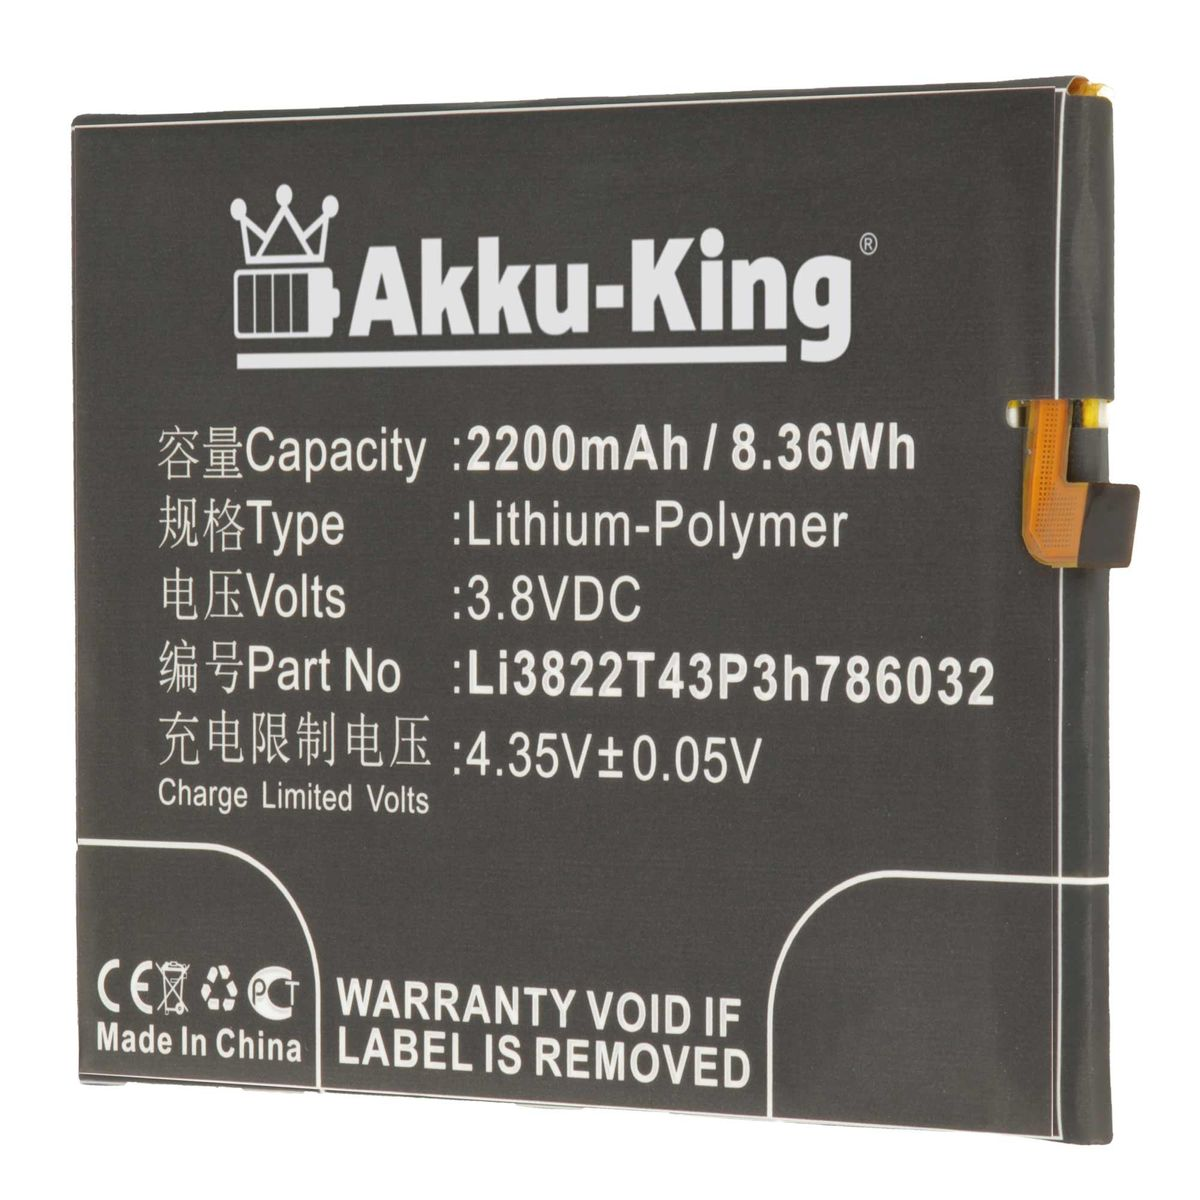 AKKU-KING Akku 2200mAh mit Handy-Akku, ZTE Li-Polymer Volt, Li3822T43P3h786032 kompatibel 3.8